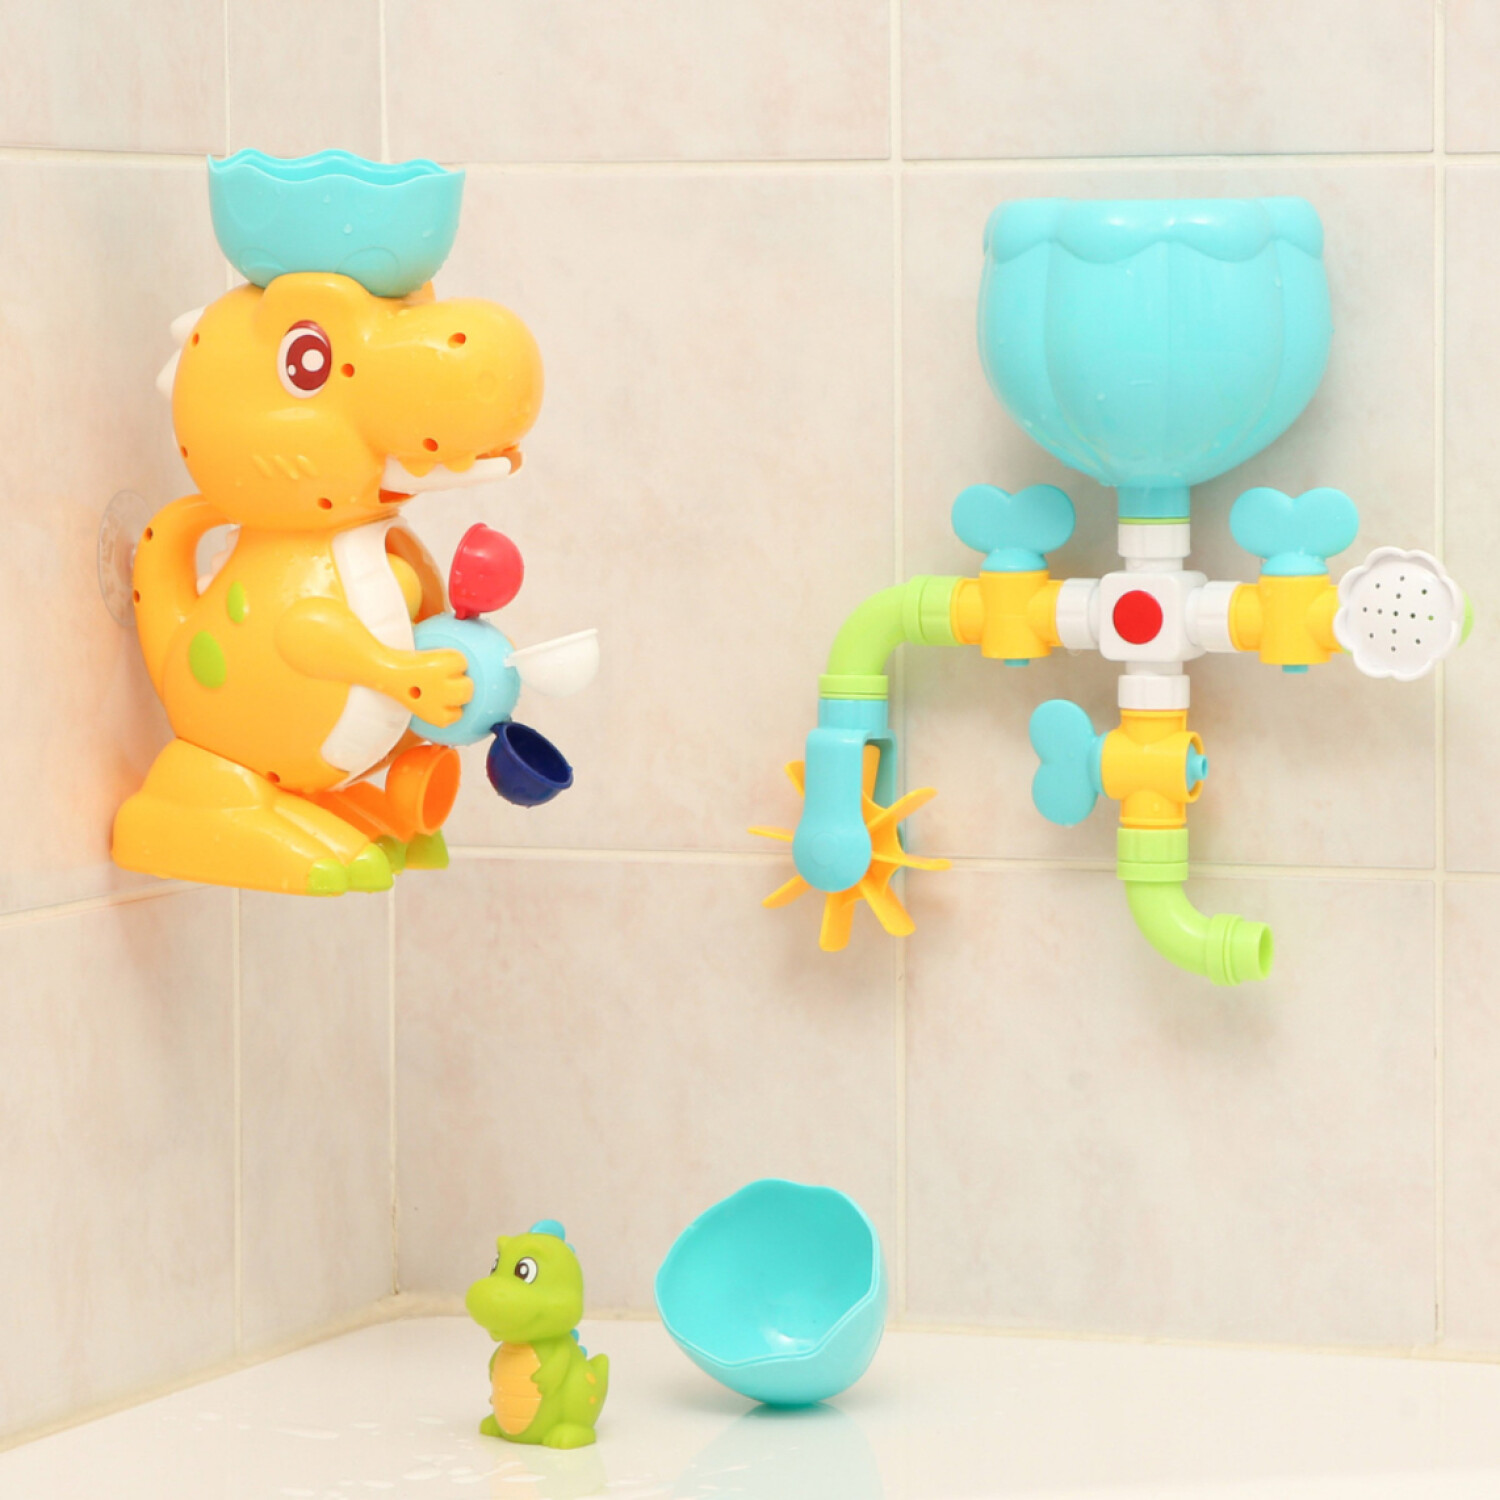 Bañera con 7 accesorios  Nuevo - Lúdiko - juguetes didácticos